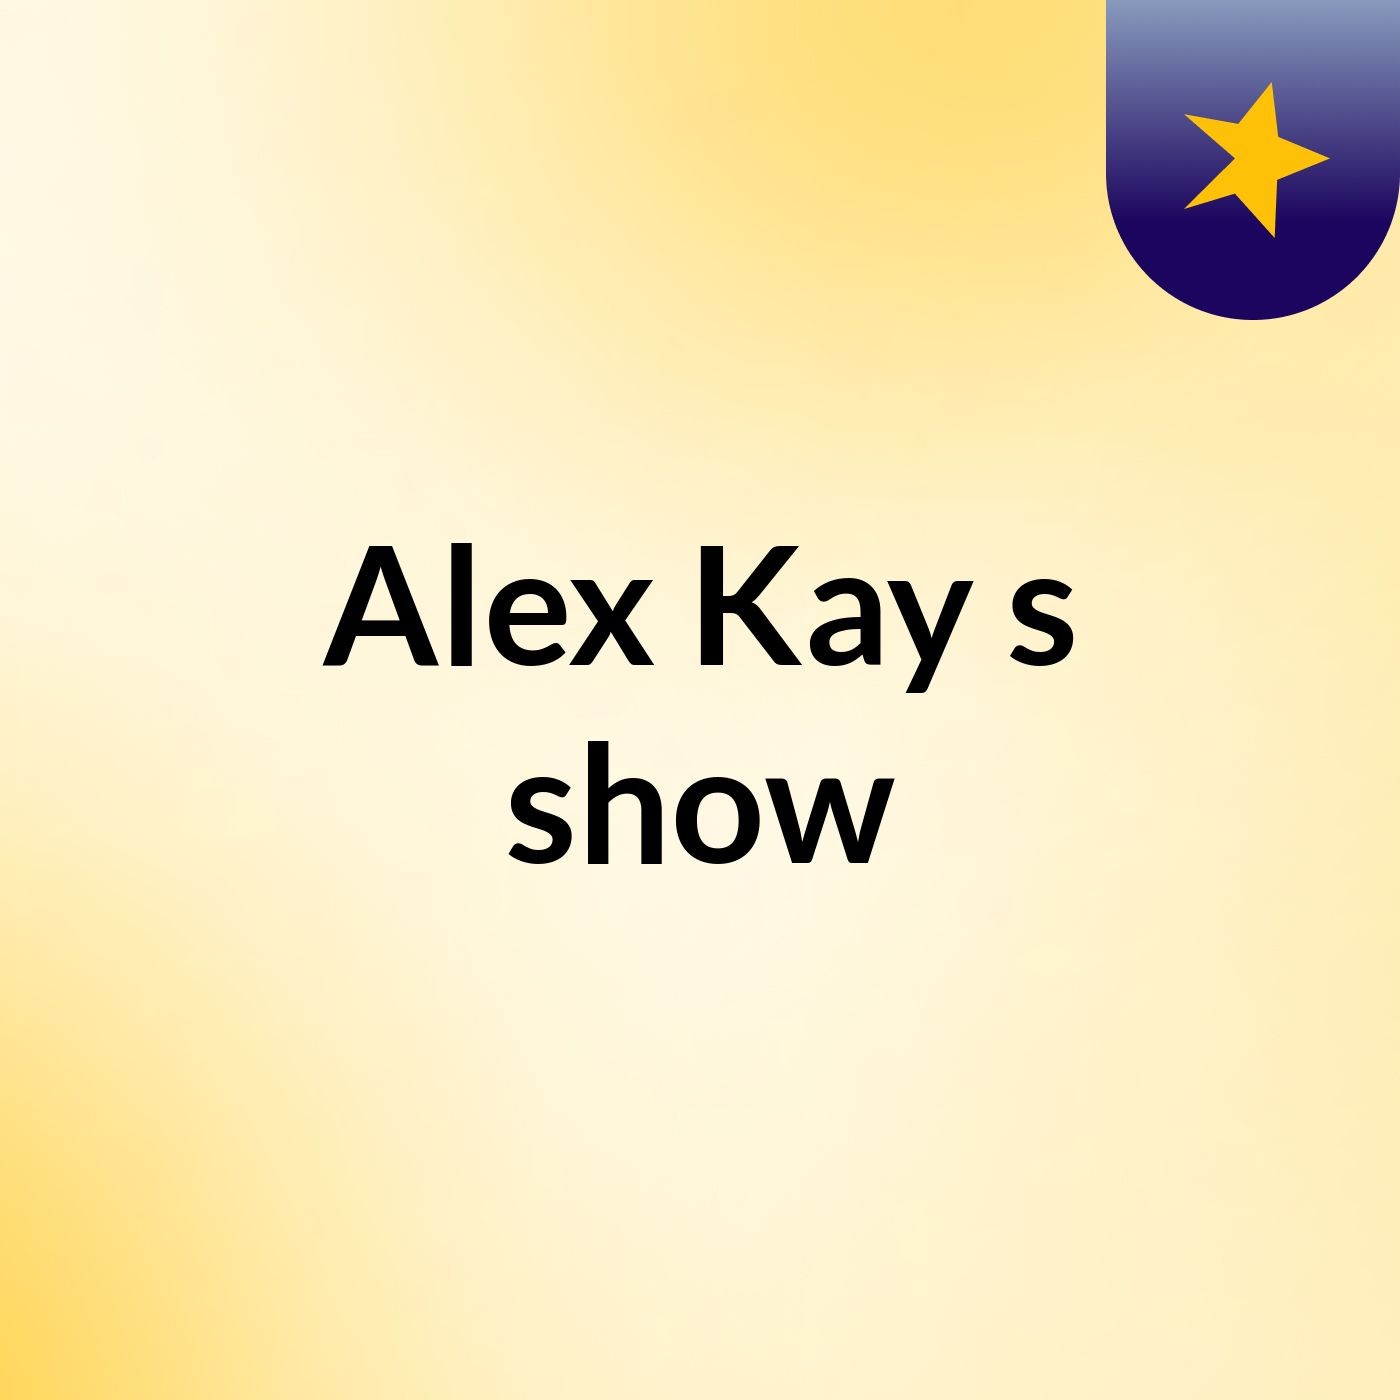 Alex Kay's show